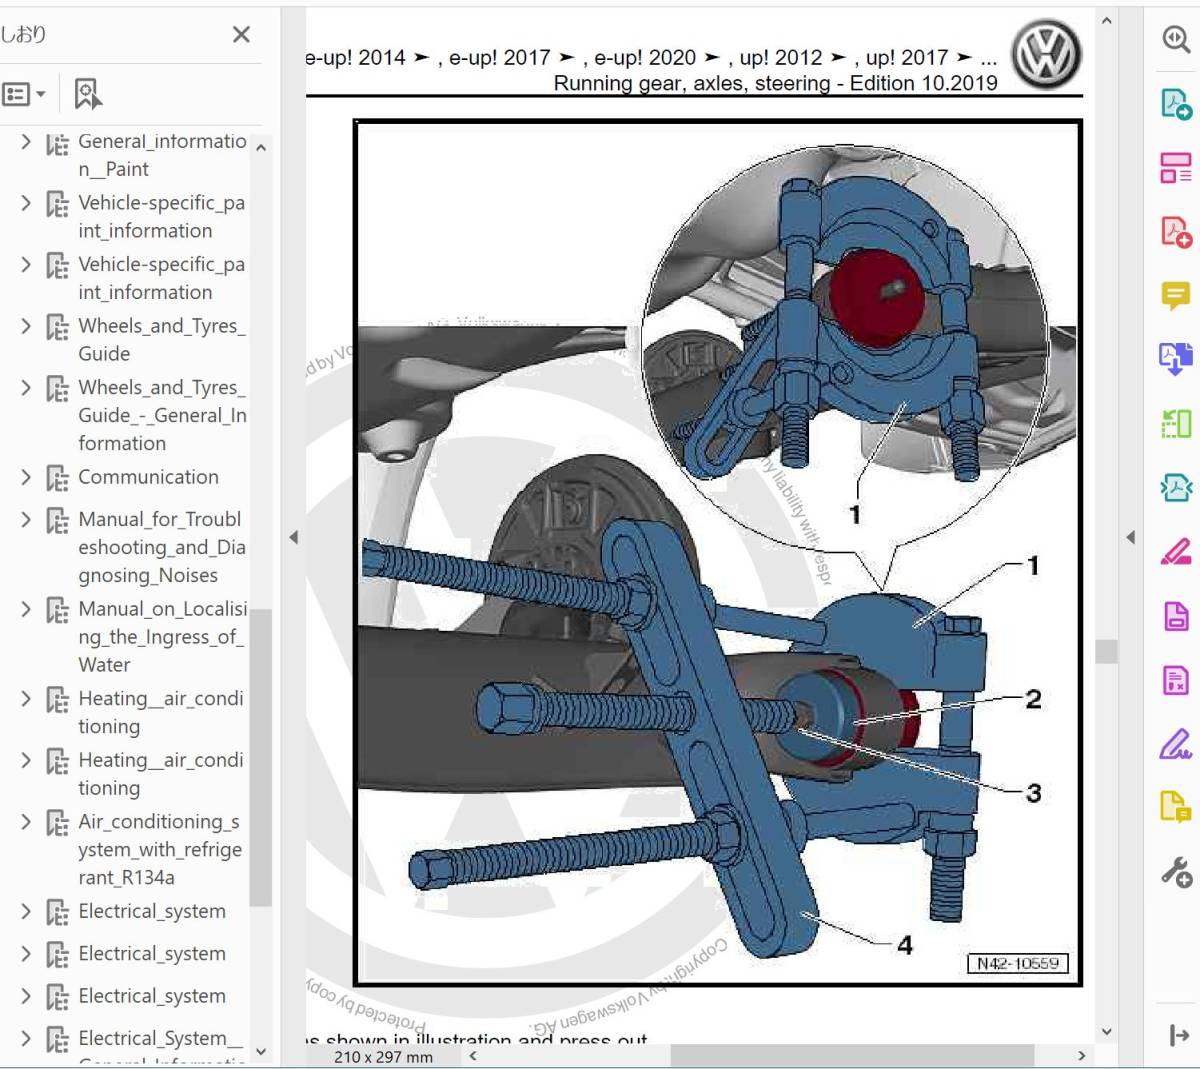 up! UP & eUP 2012 - 2020ワークショップマニュアル サービスリペアマニュアル 整備書 配線図 フォルクスワーゲン VW の画像3